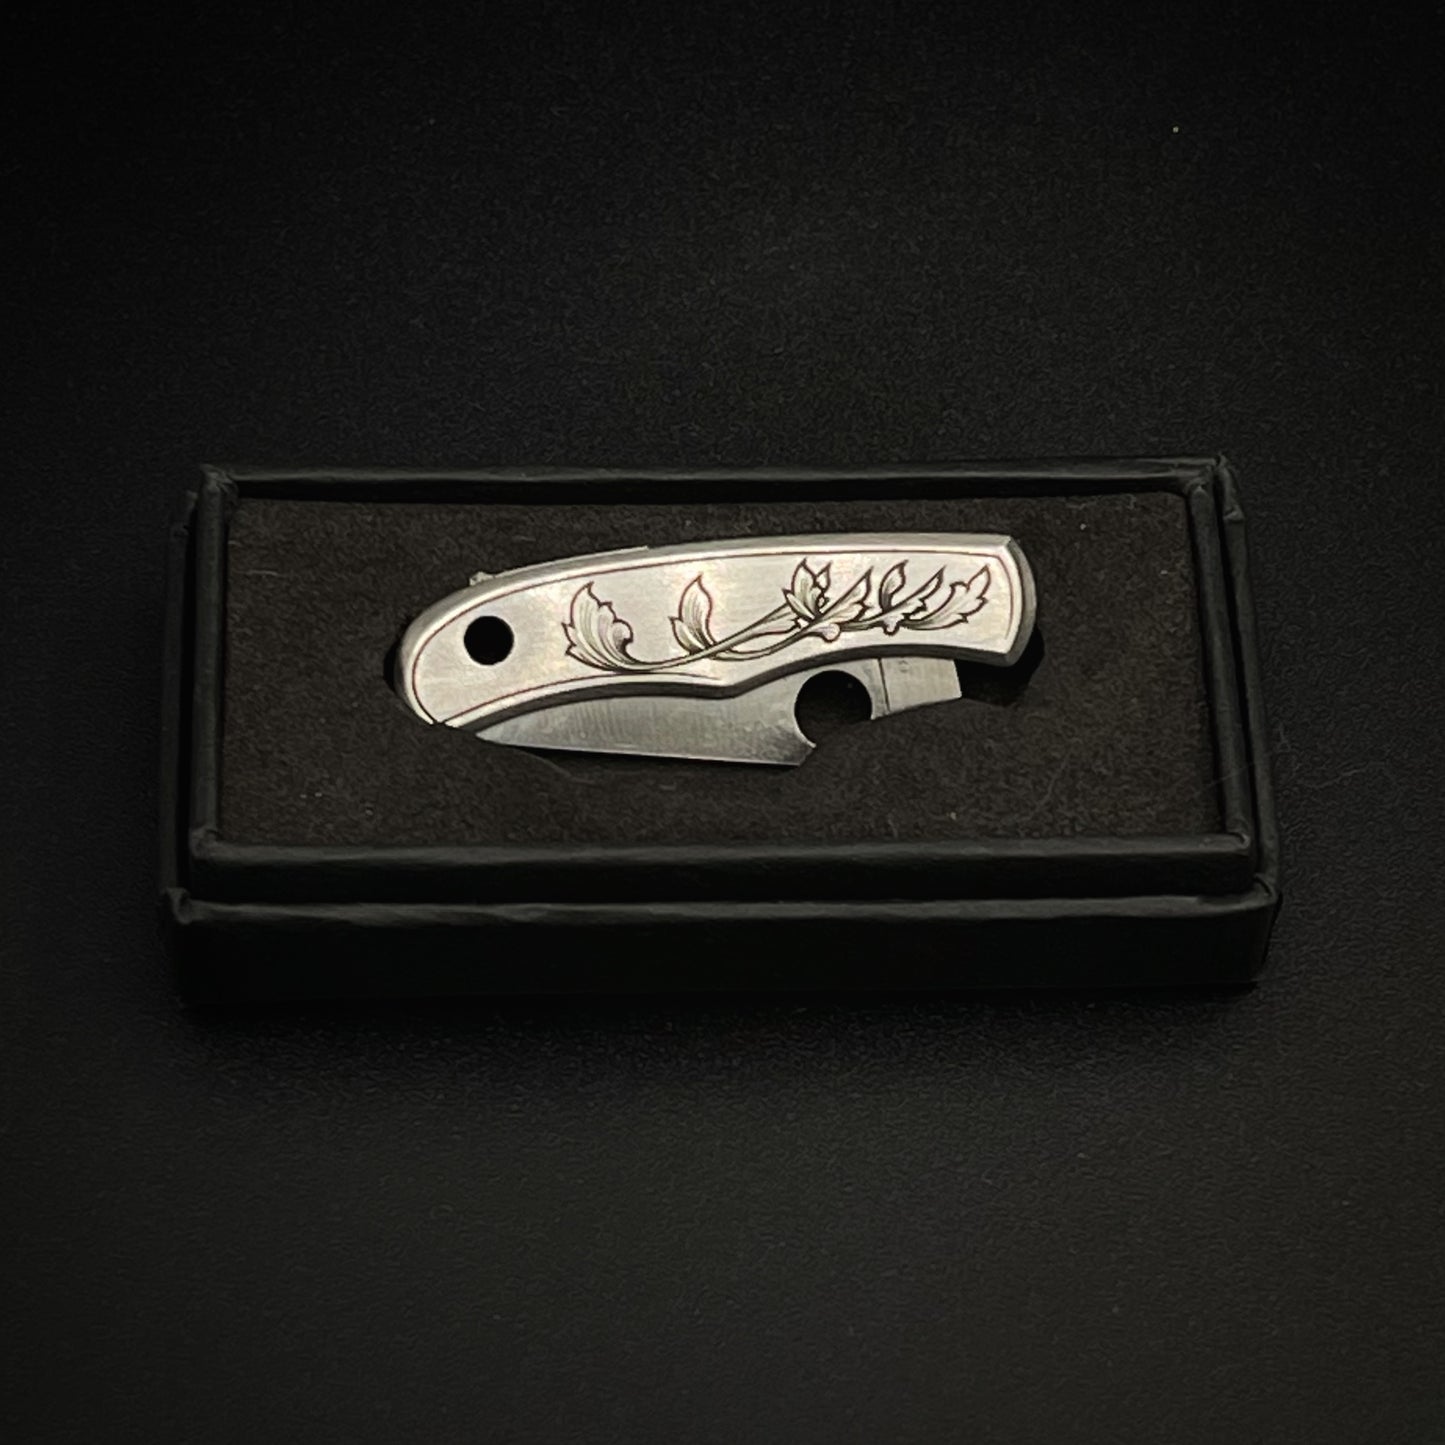 Hand-engraved Syderco Pocket Knife - Bug